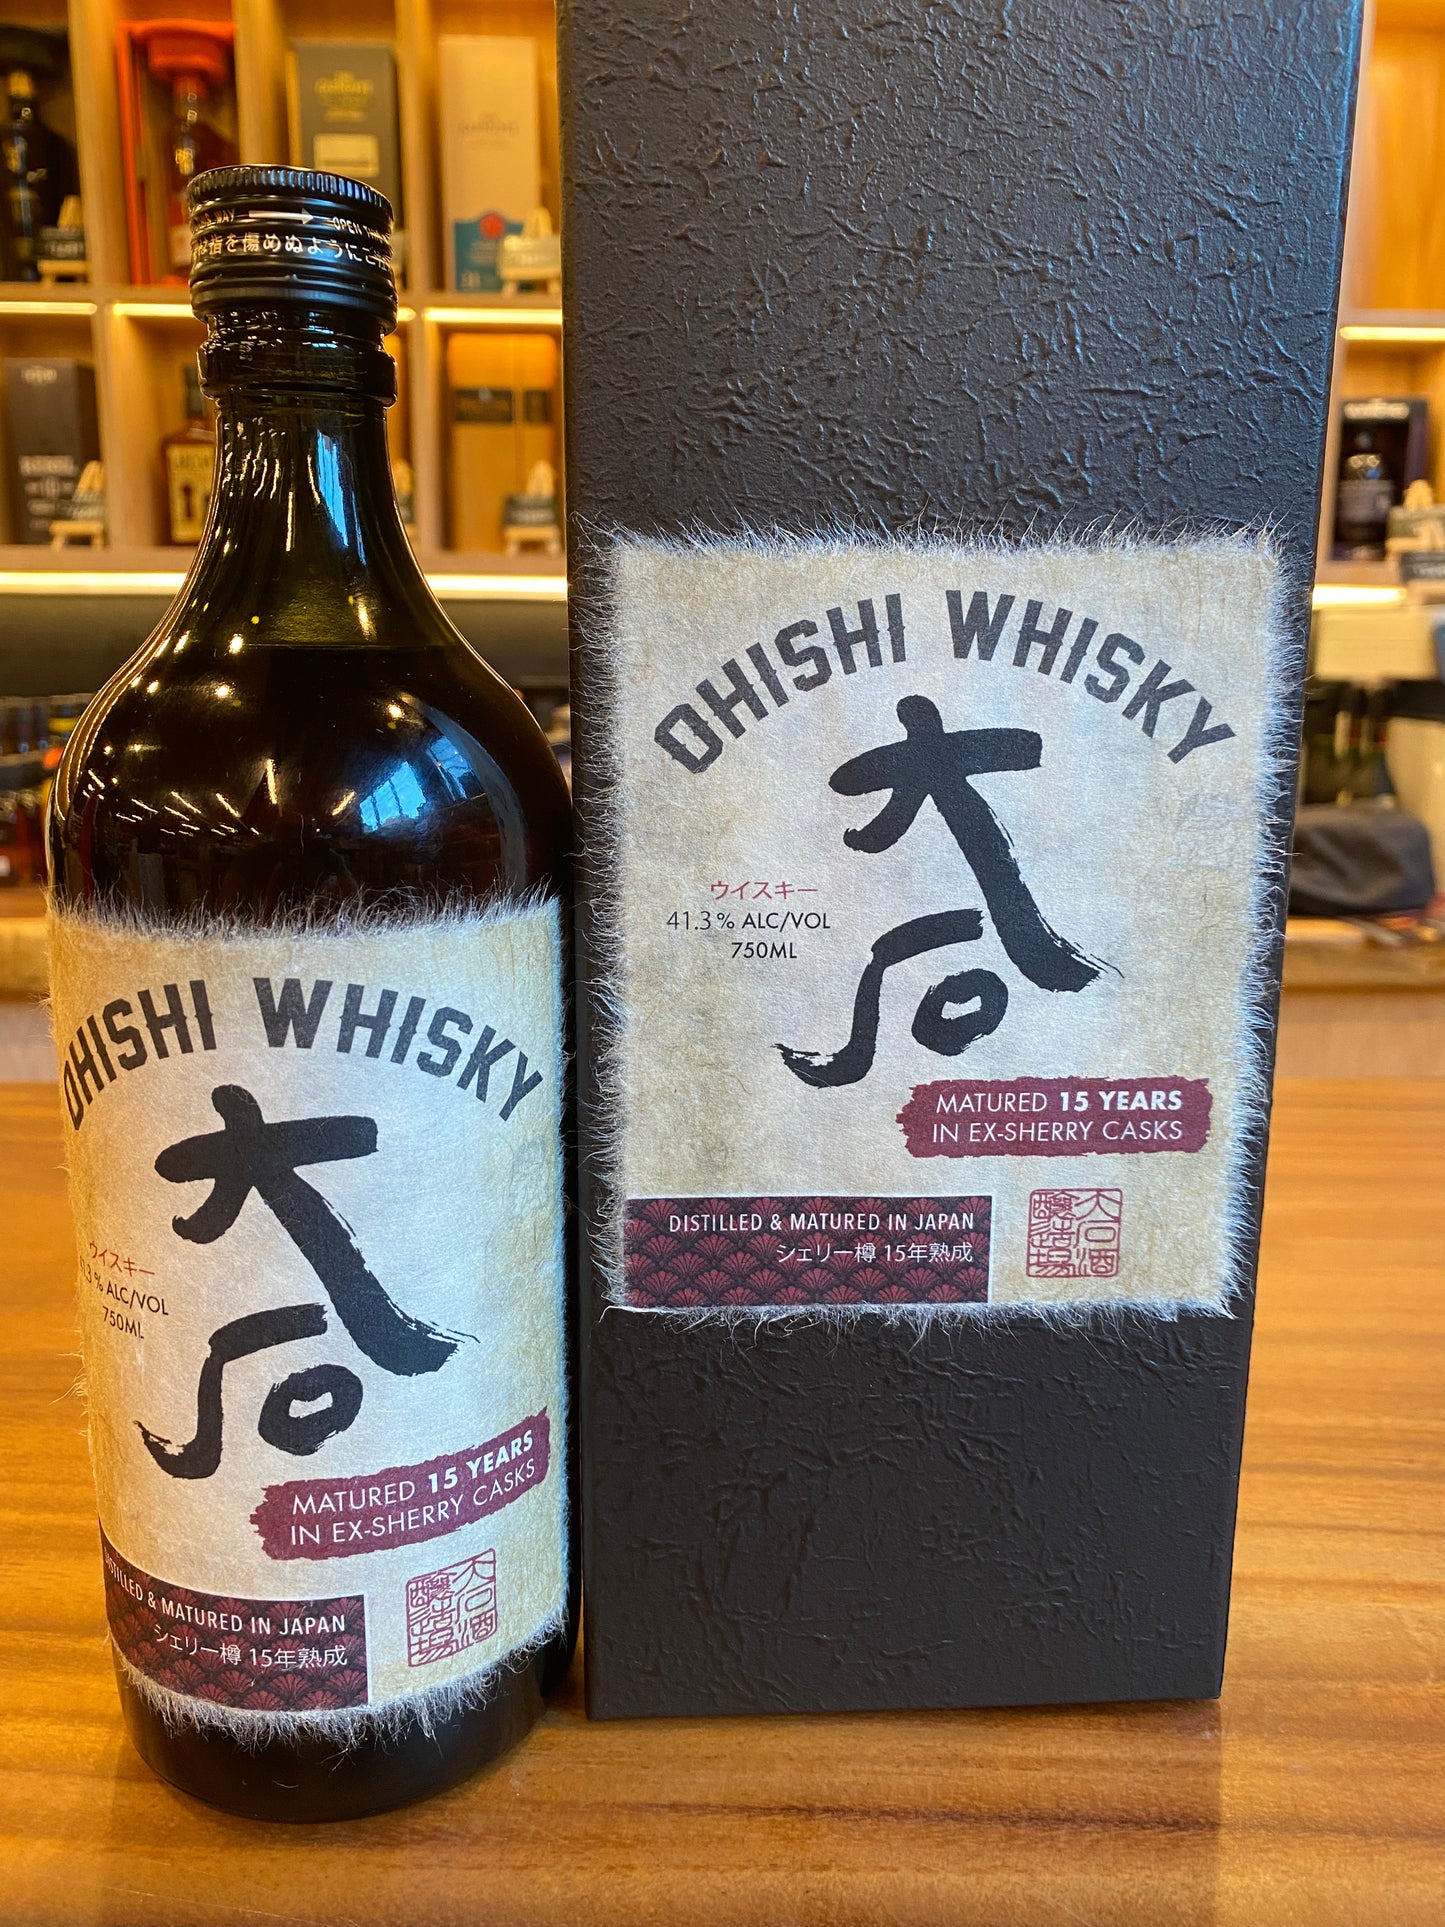 Ohishi Whisky aged 15 Year Sherry Cask, 750 ML